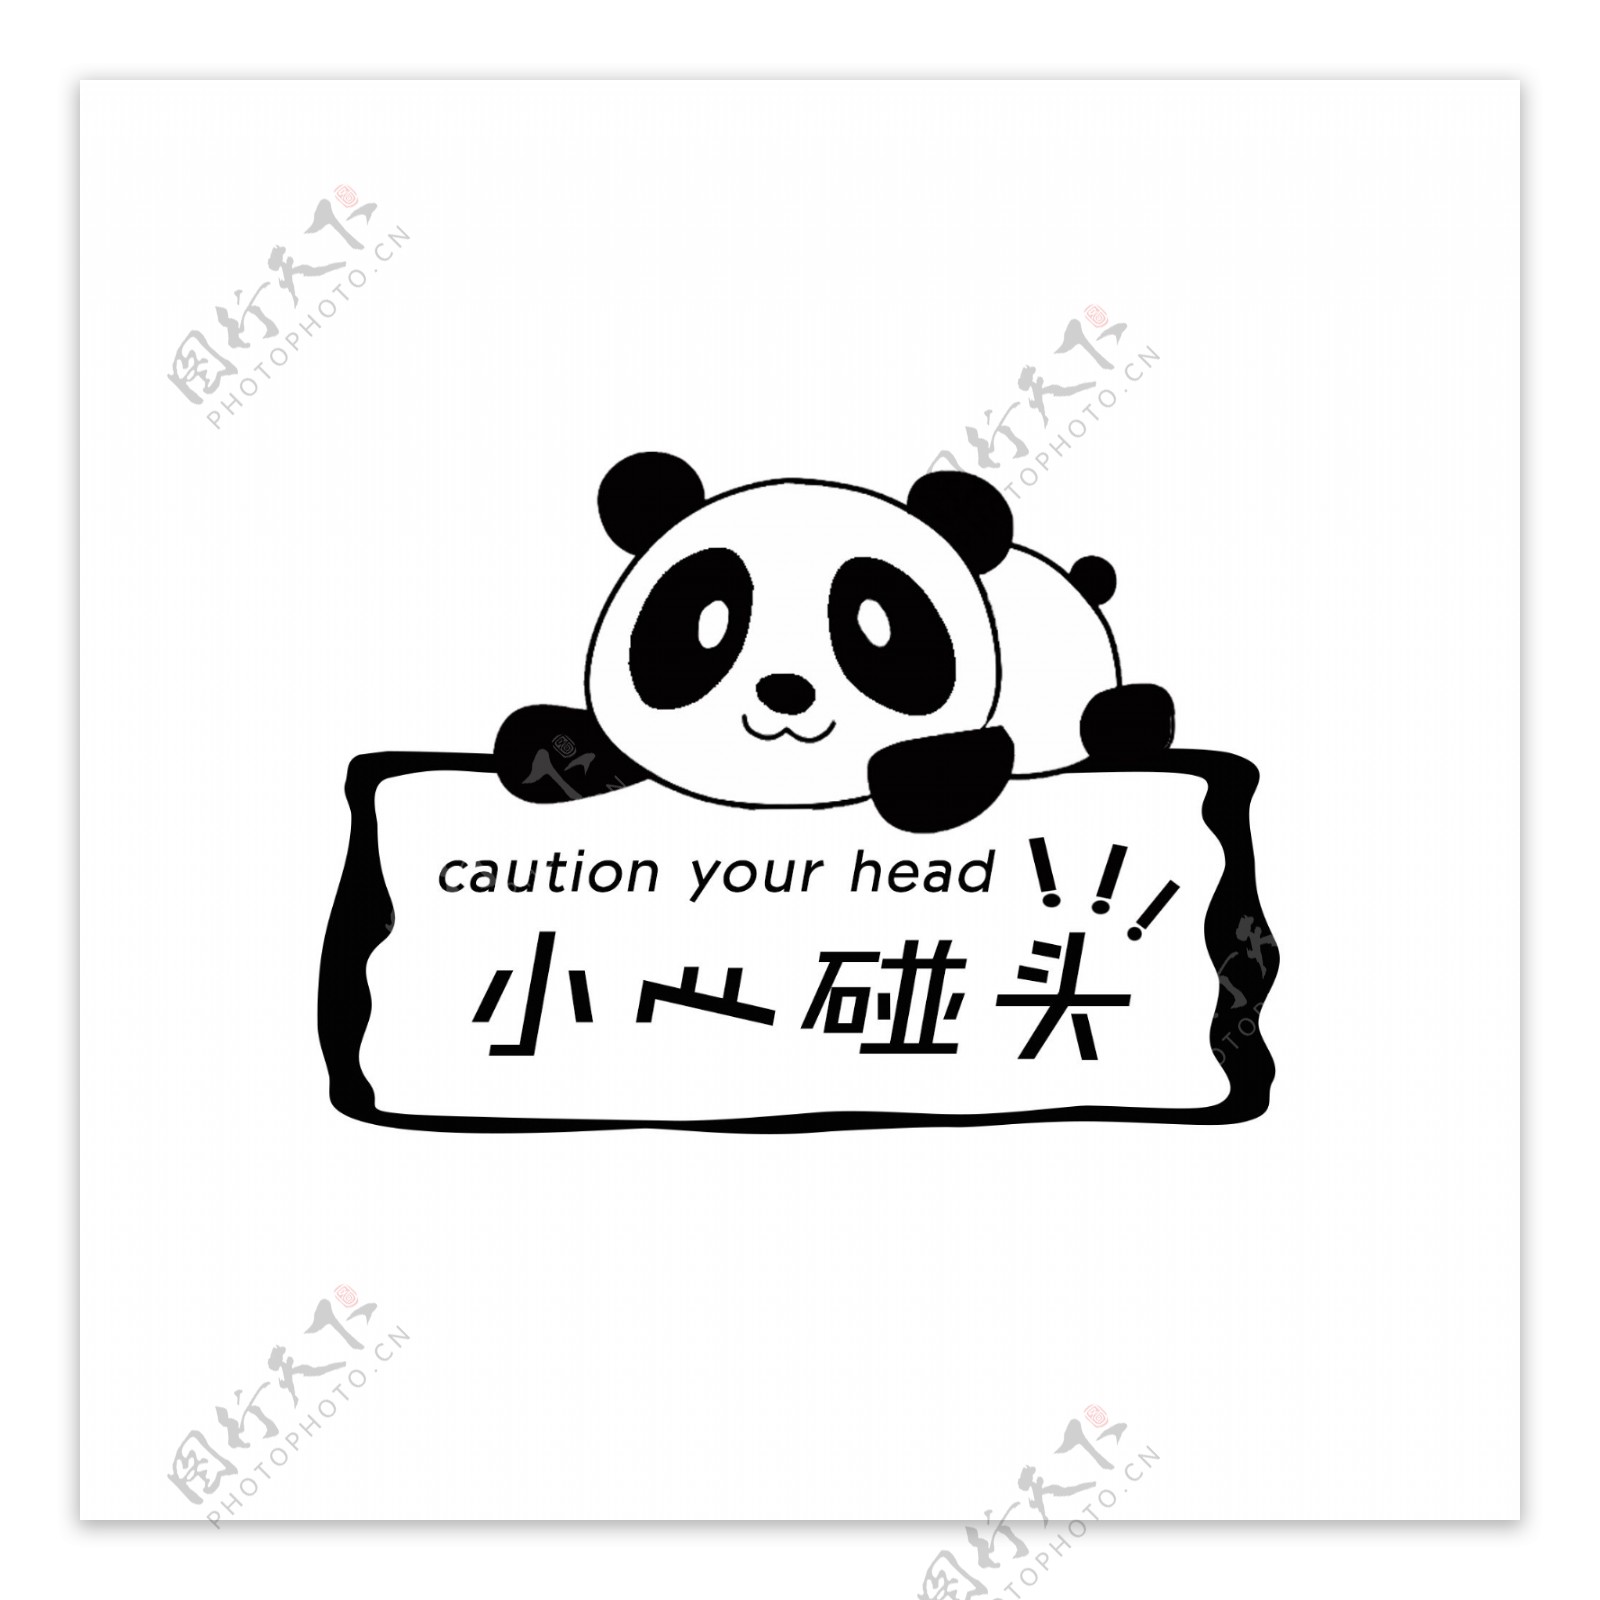 温馨提示语小心碰头卡通可爱熊猫标牌设计